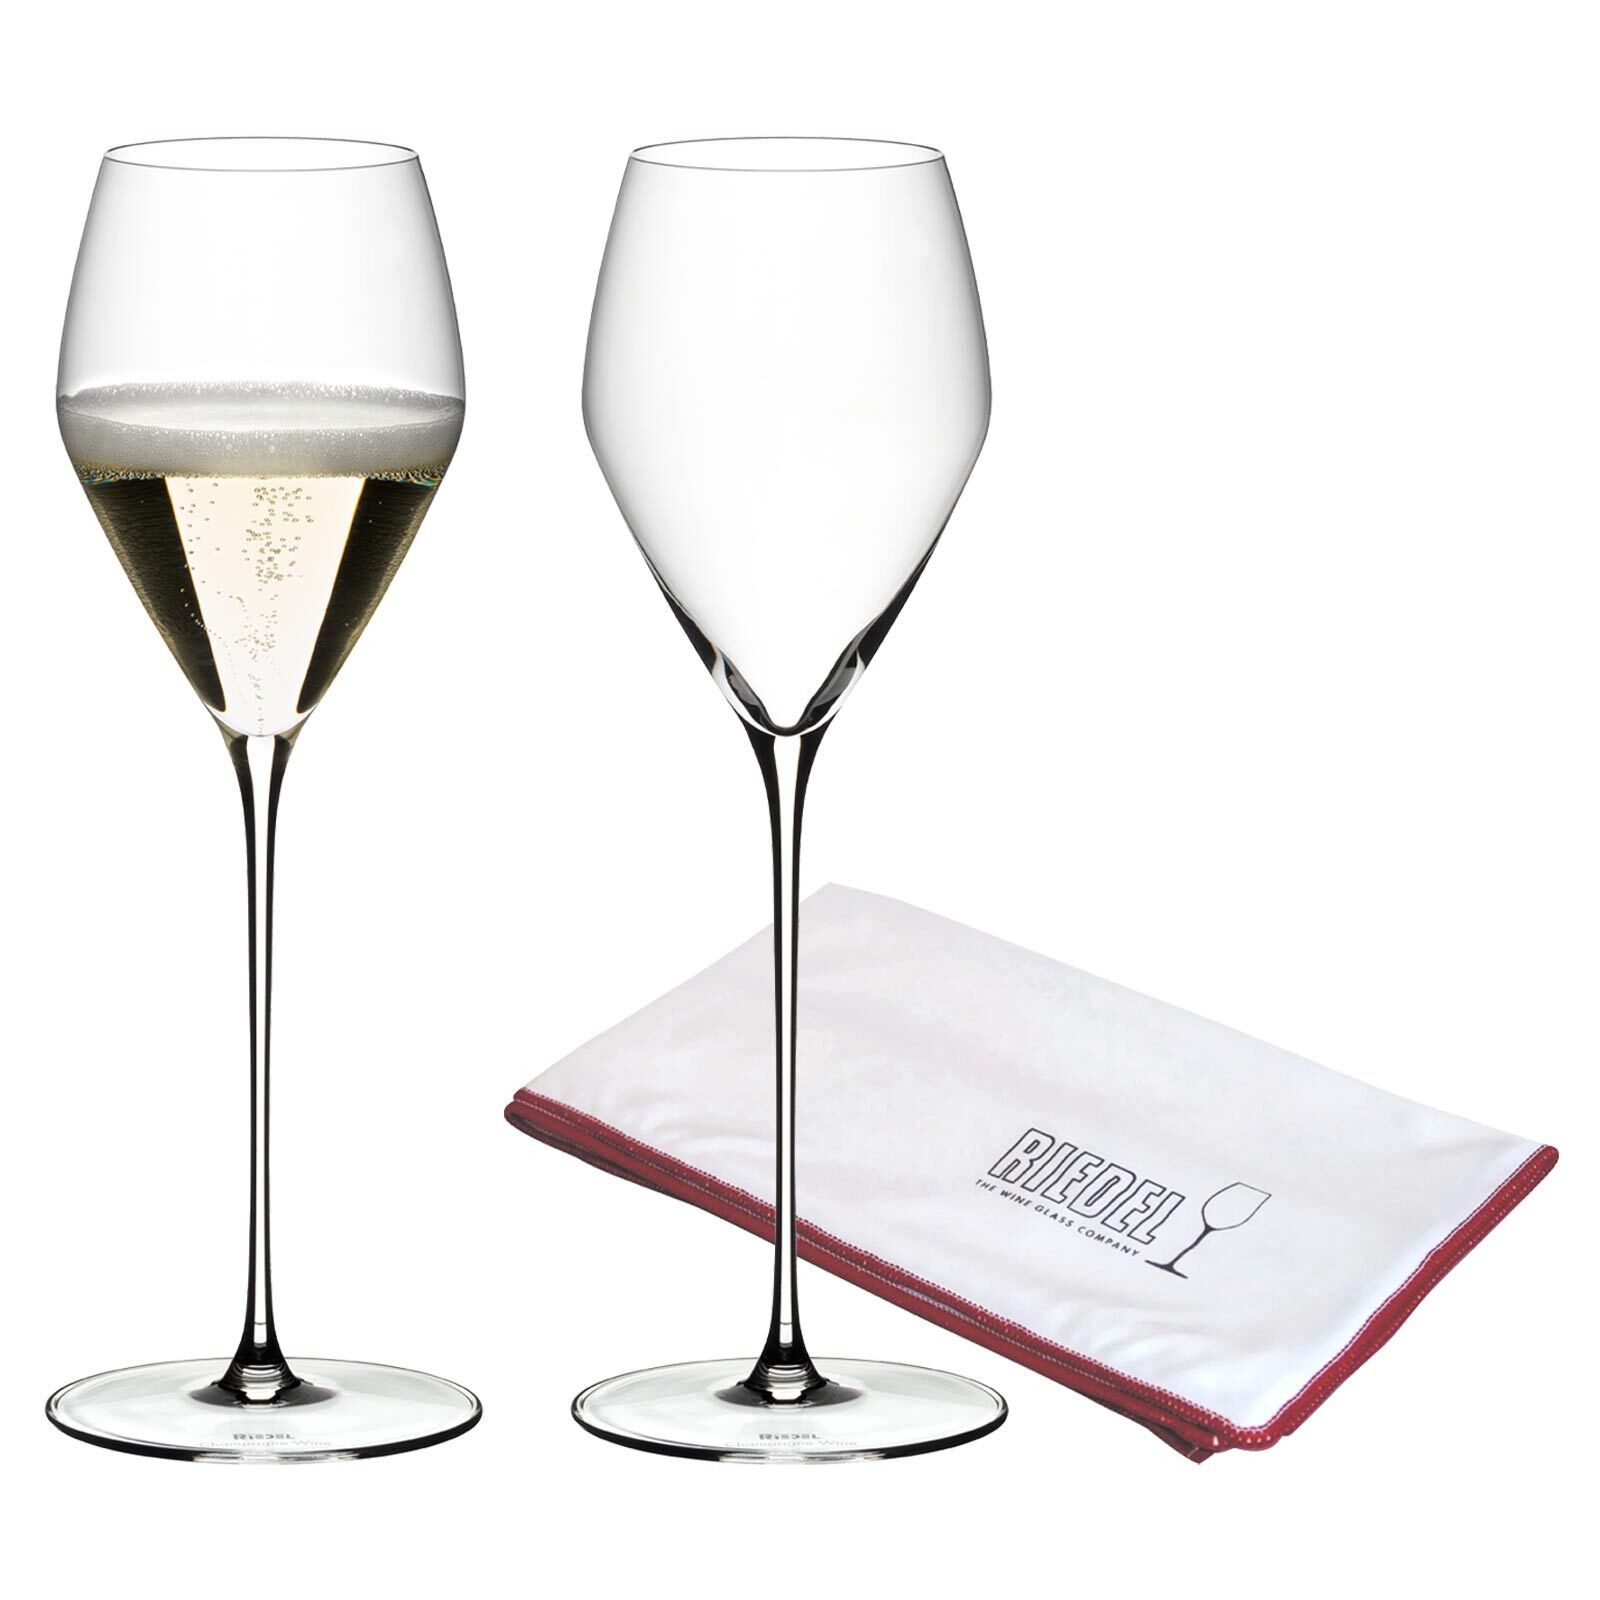 RIEDEL THE WINE GLASS COMPANY Champagnerglas Veloce Champagner Gläser + Poliertuch 327 ml, Glas